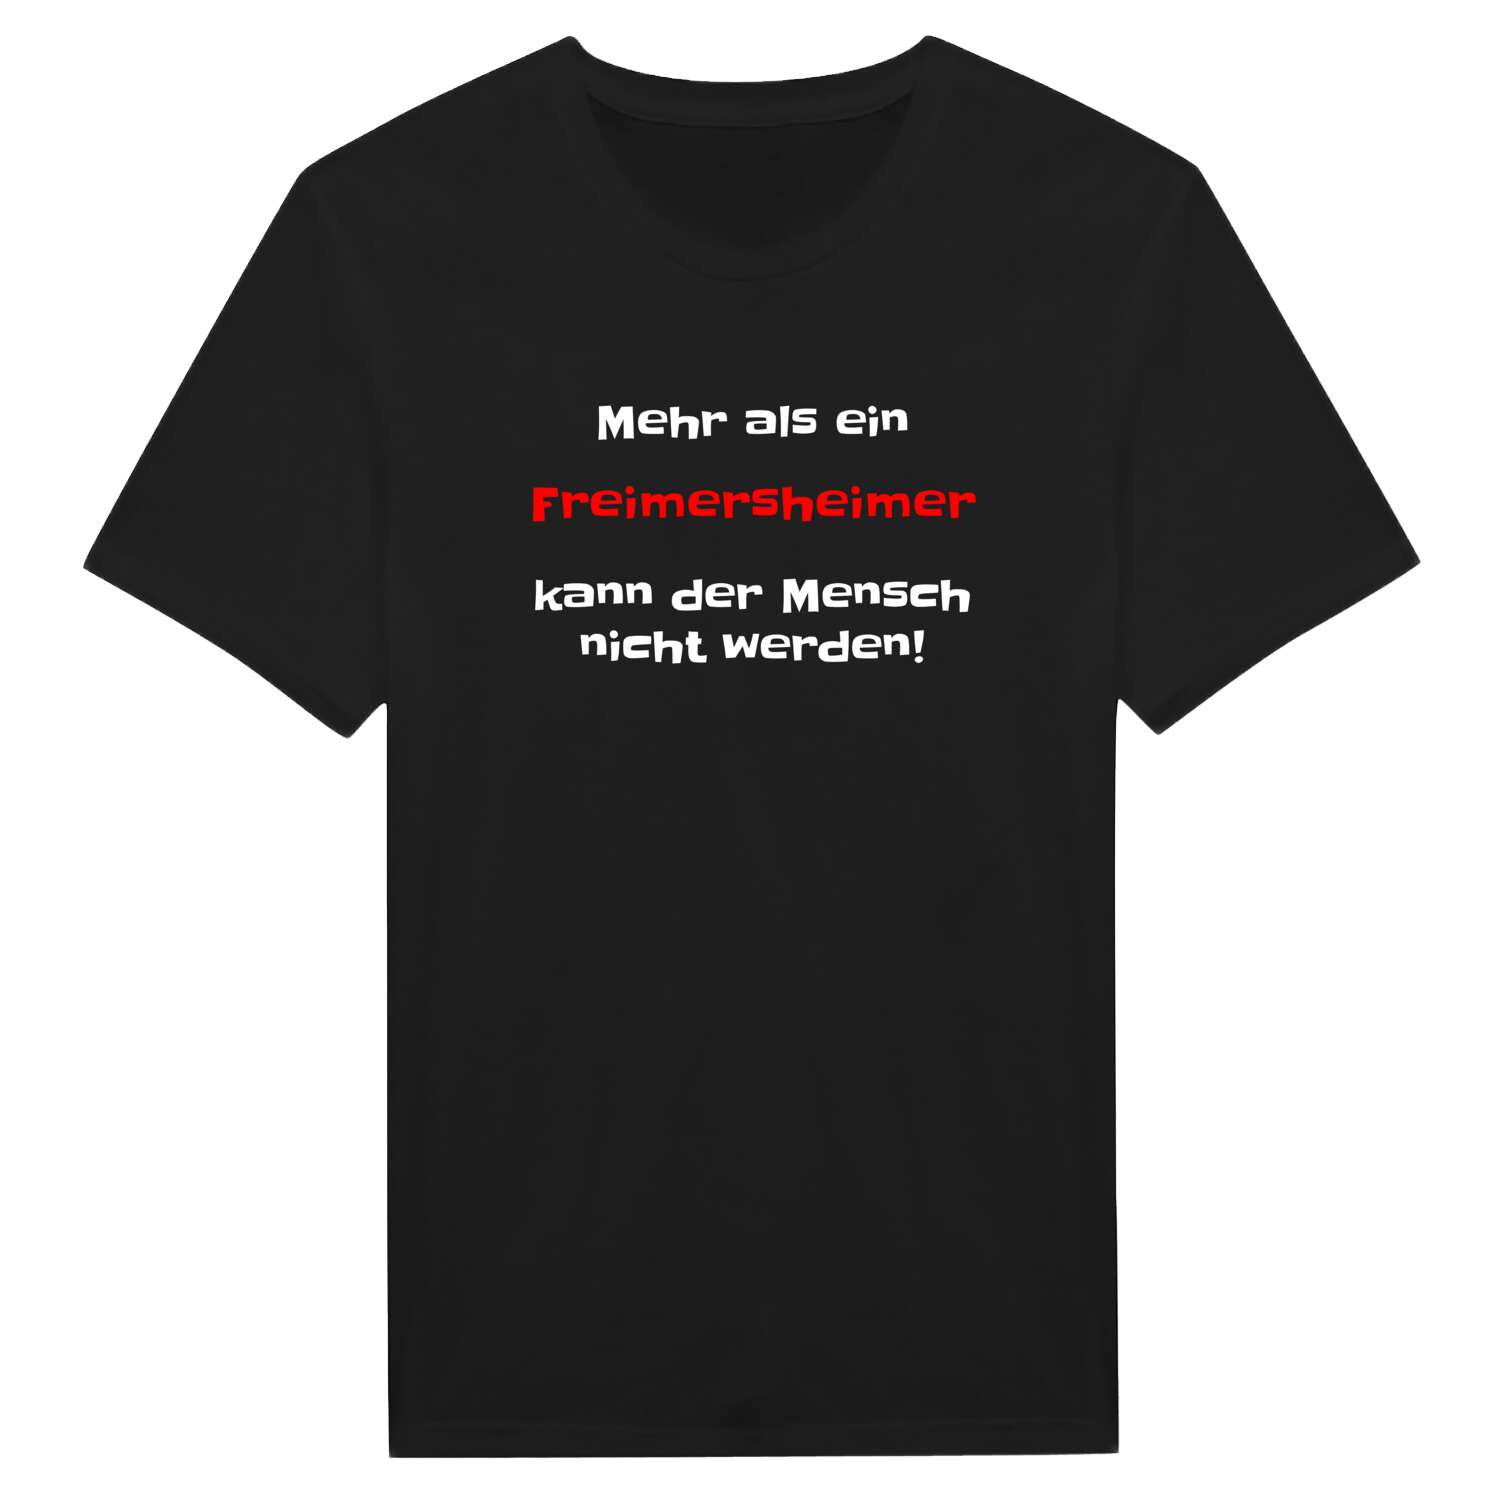 Freimersheim T-Shirt »Mehr als ein«